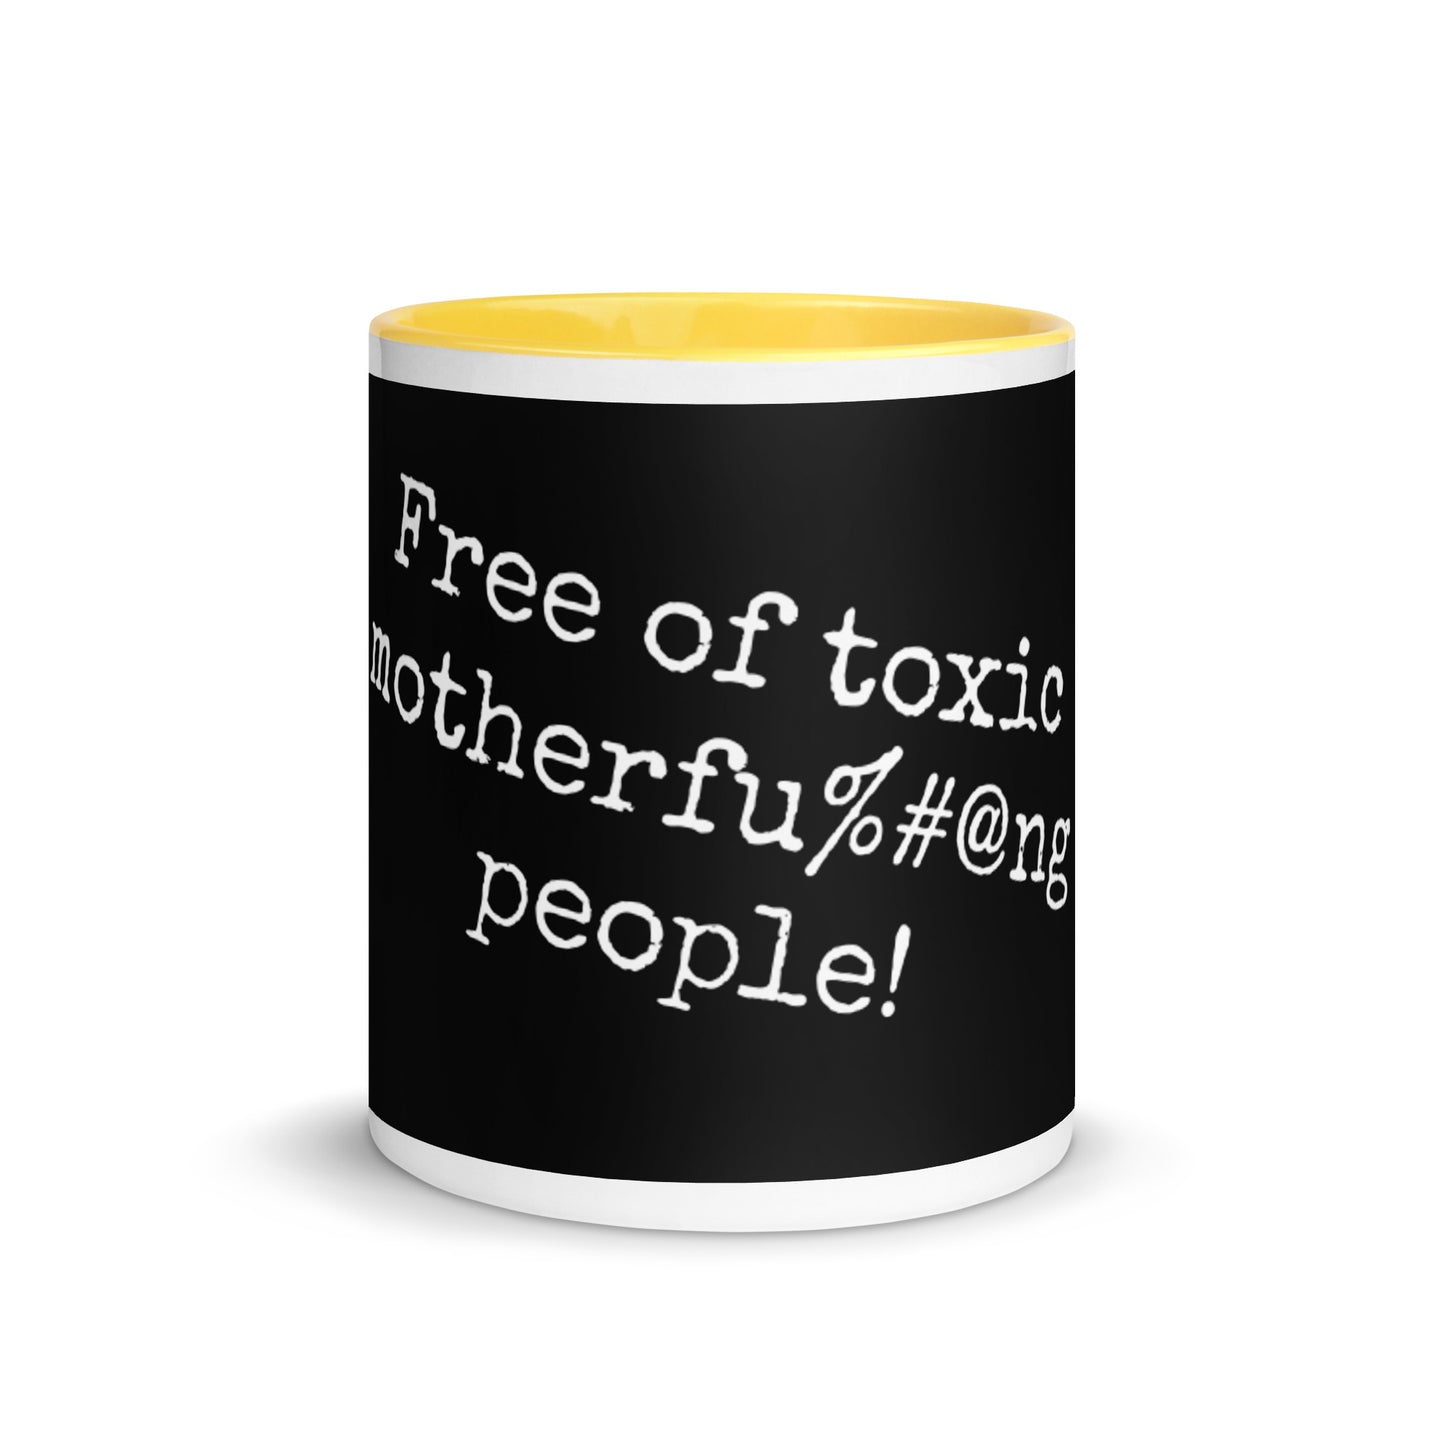 Tasse de couleur noire - Sans #$% de personnes toxiques !